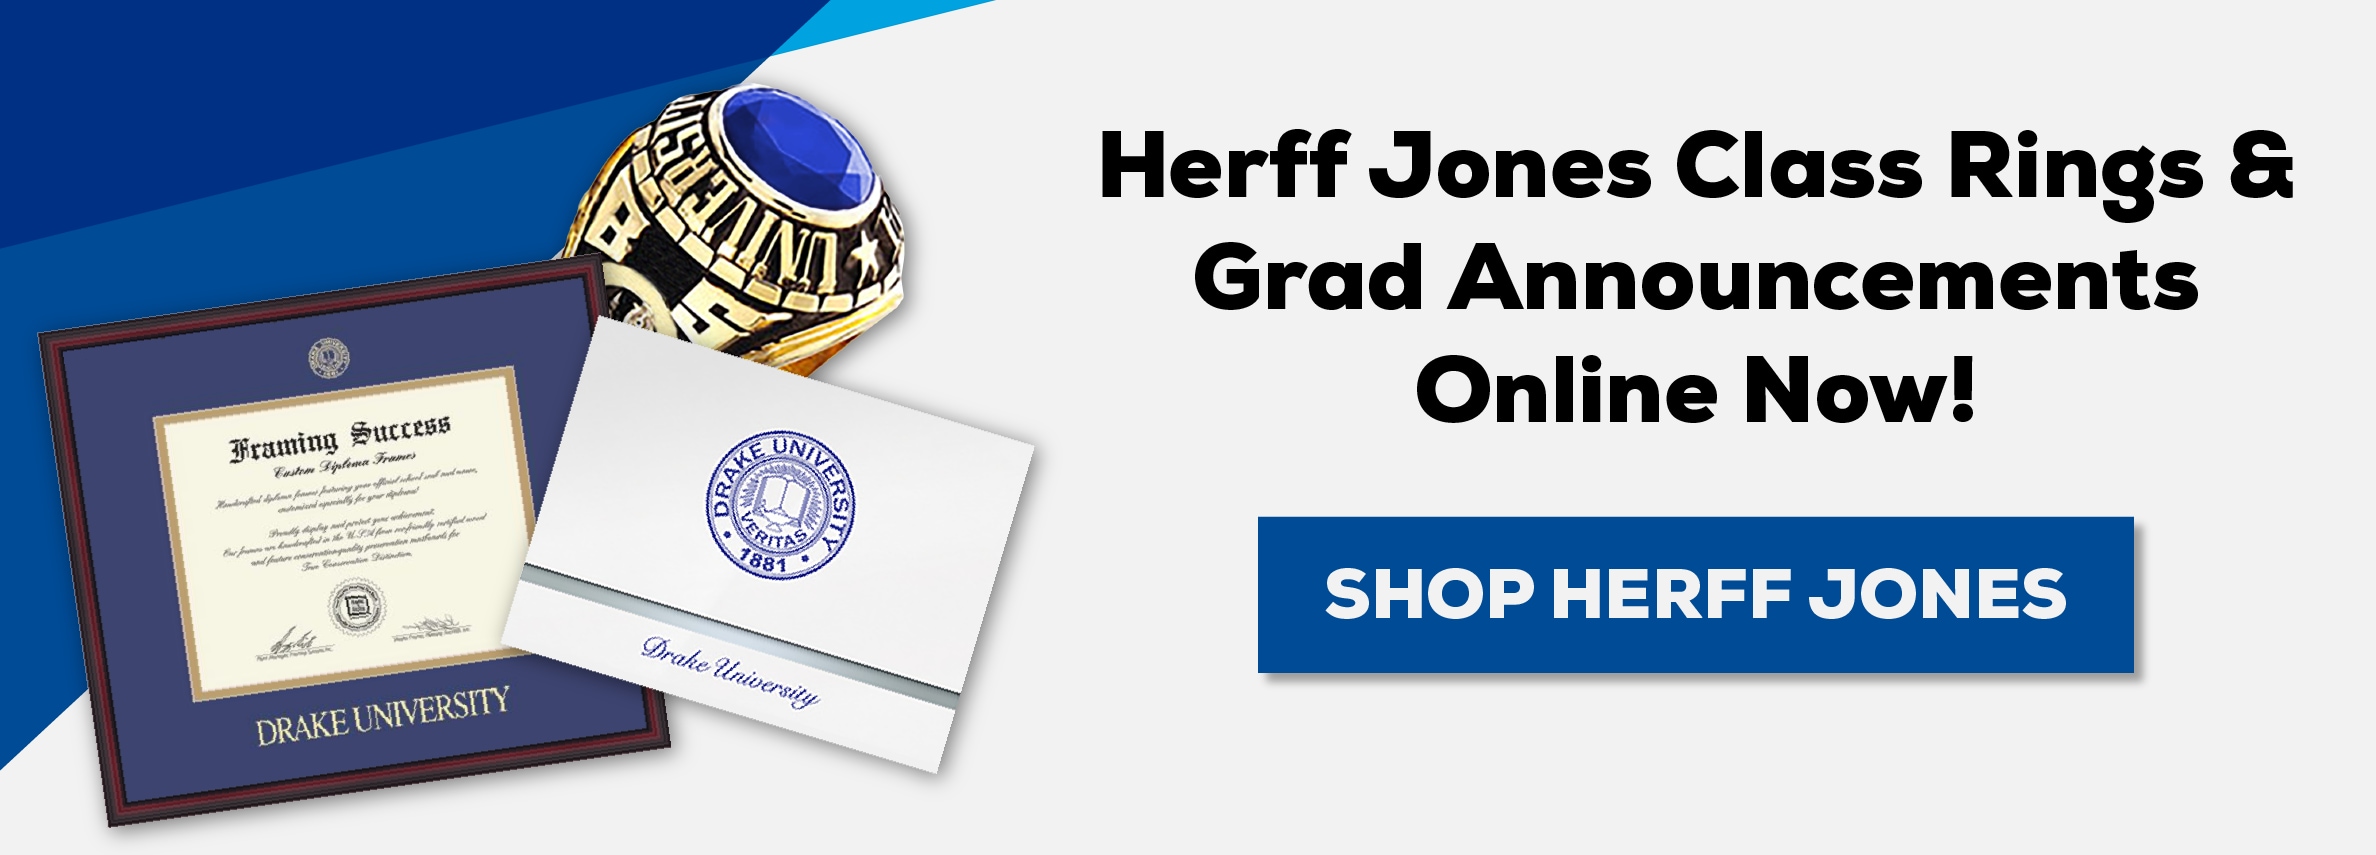 Herff Jones Class Rings & Grad Announcements Online Now! SHOP HERFF JONES (new tab)